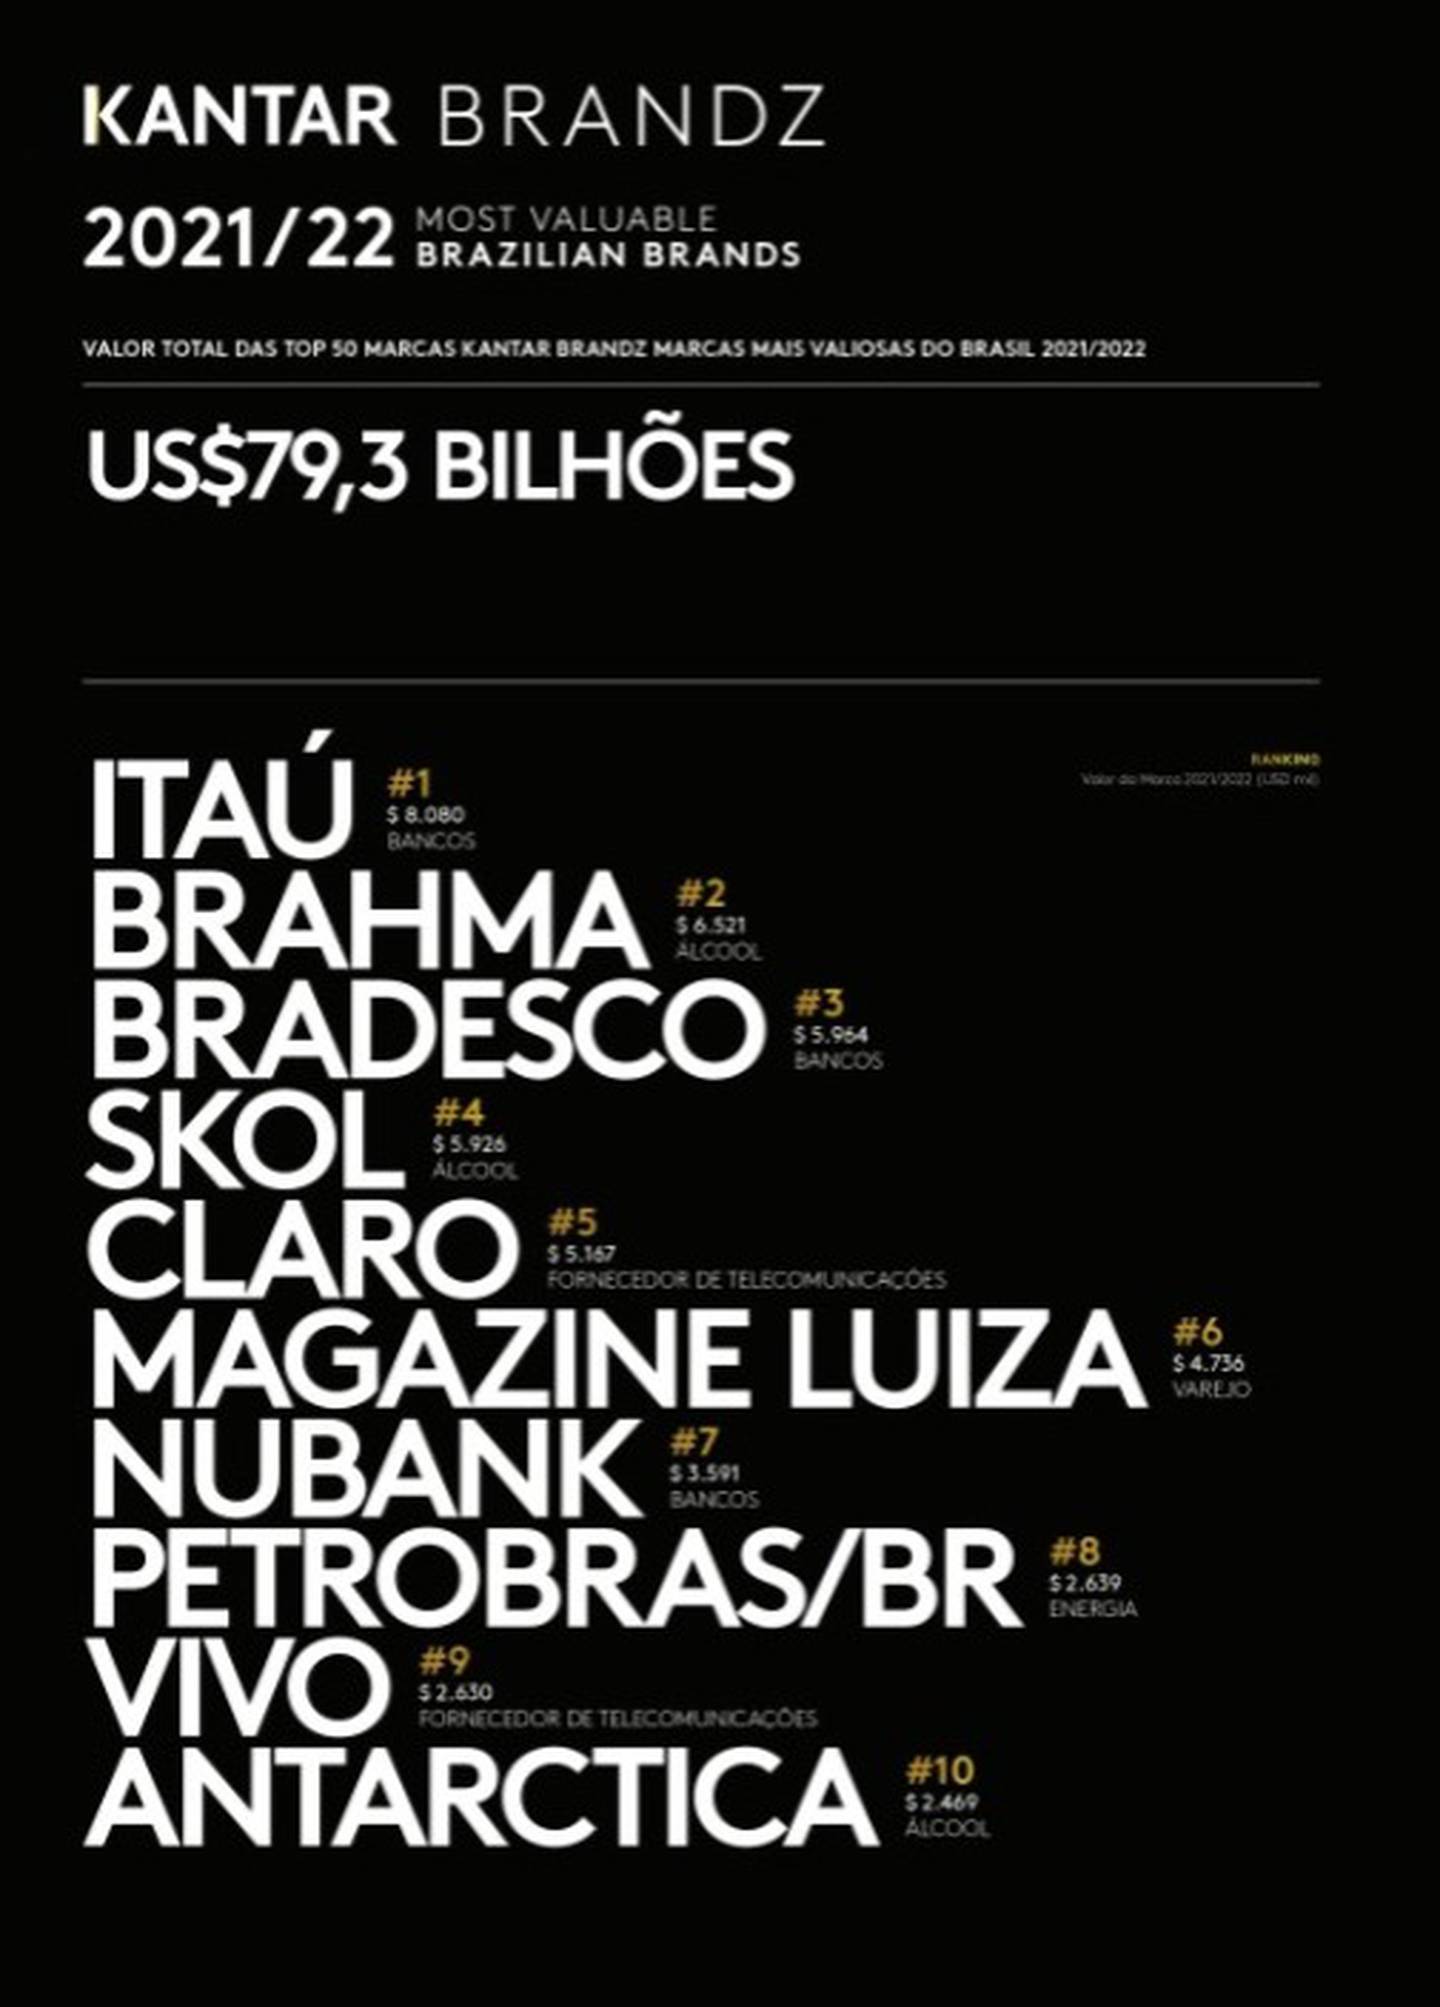 As 10 marcas mais valiosas do Brasil em 2021/22dfd